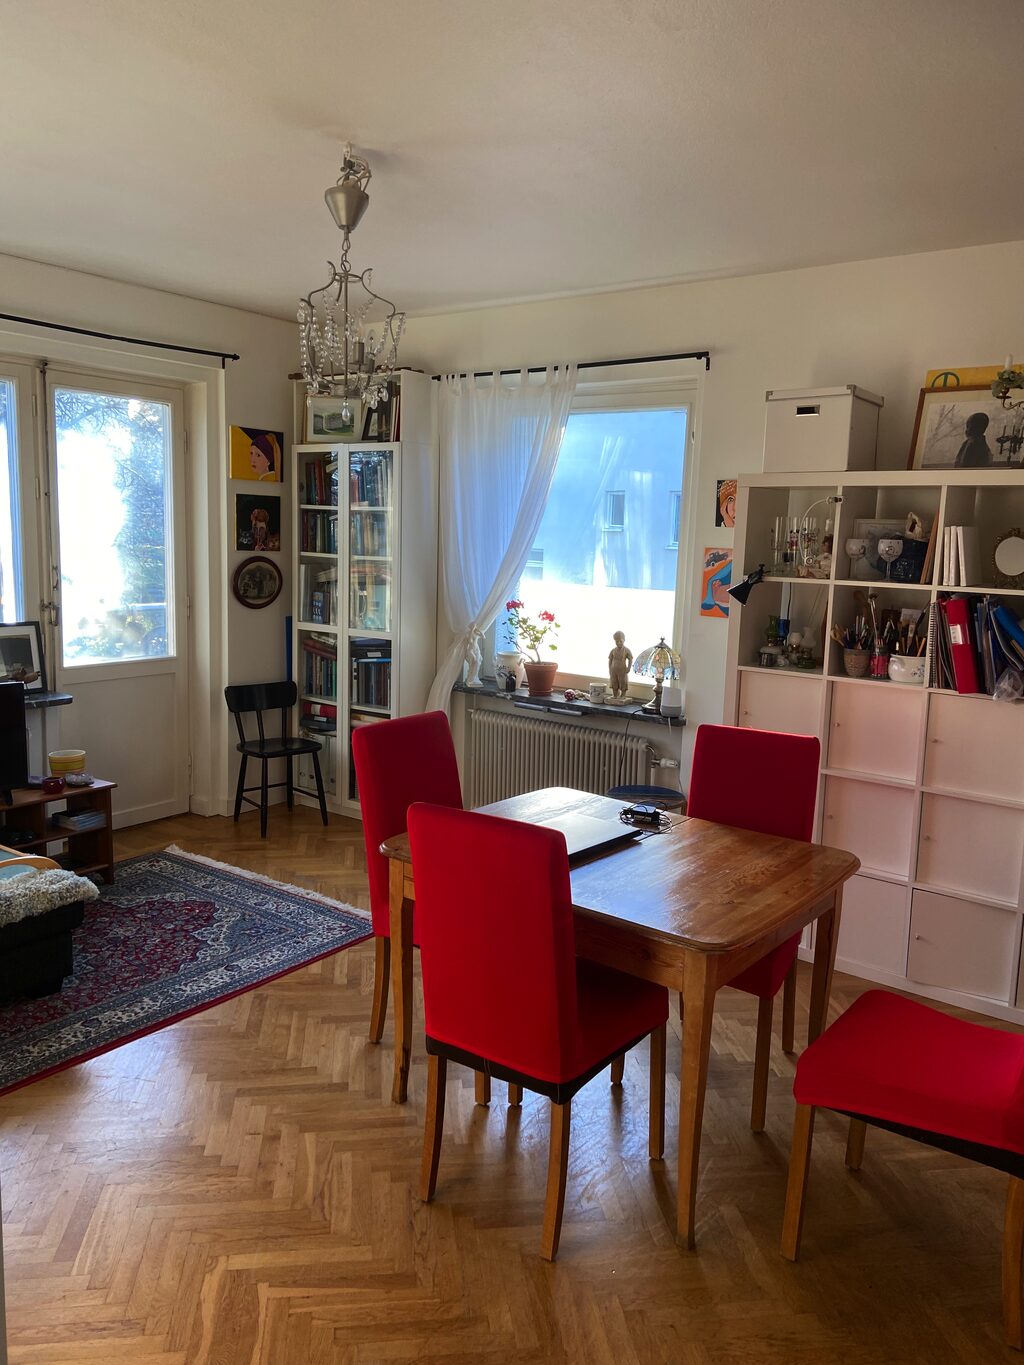 Lägenhetsbyte - Vänersborgsvägen 16, 121 39 Johanneshov